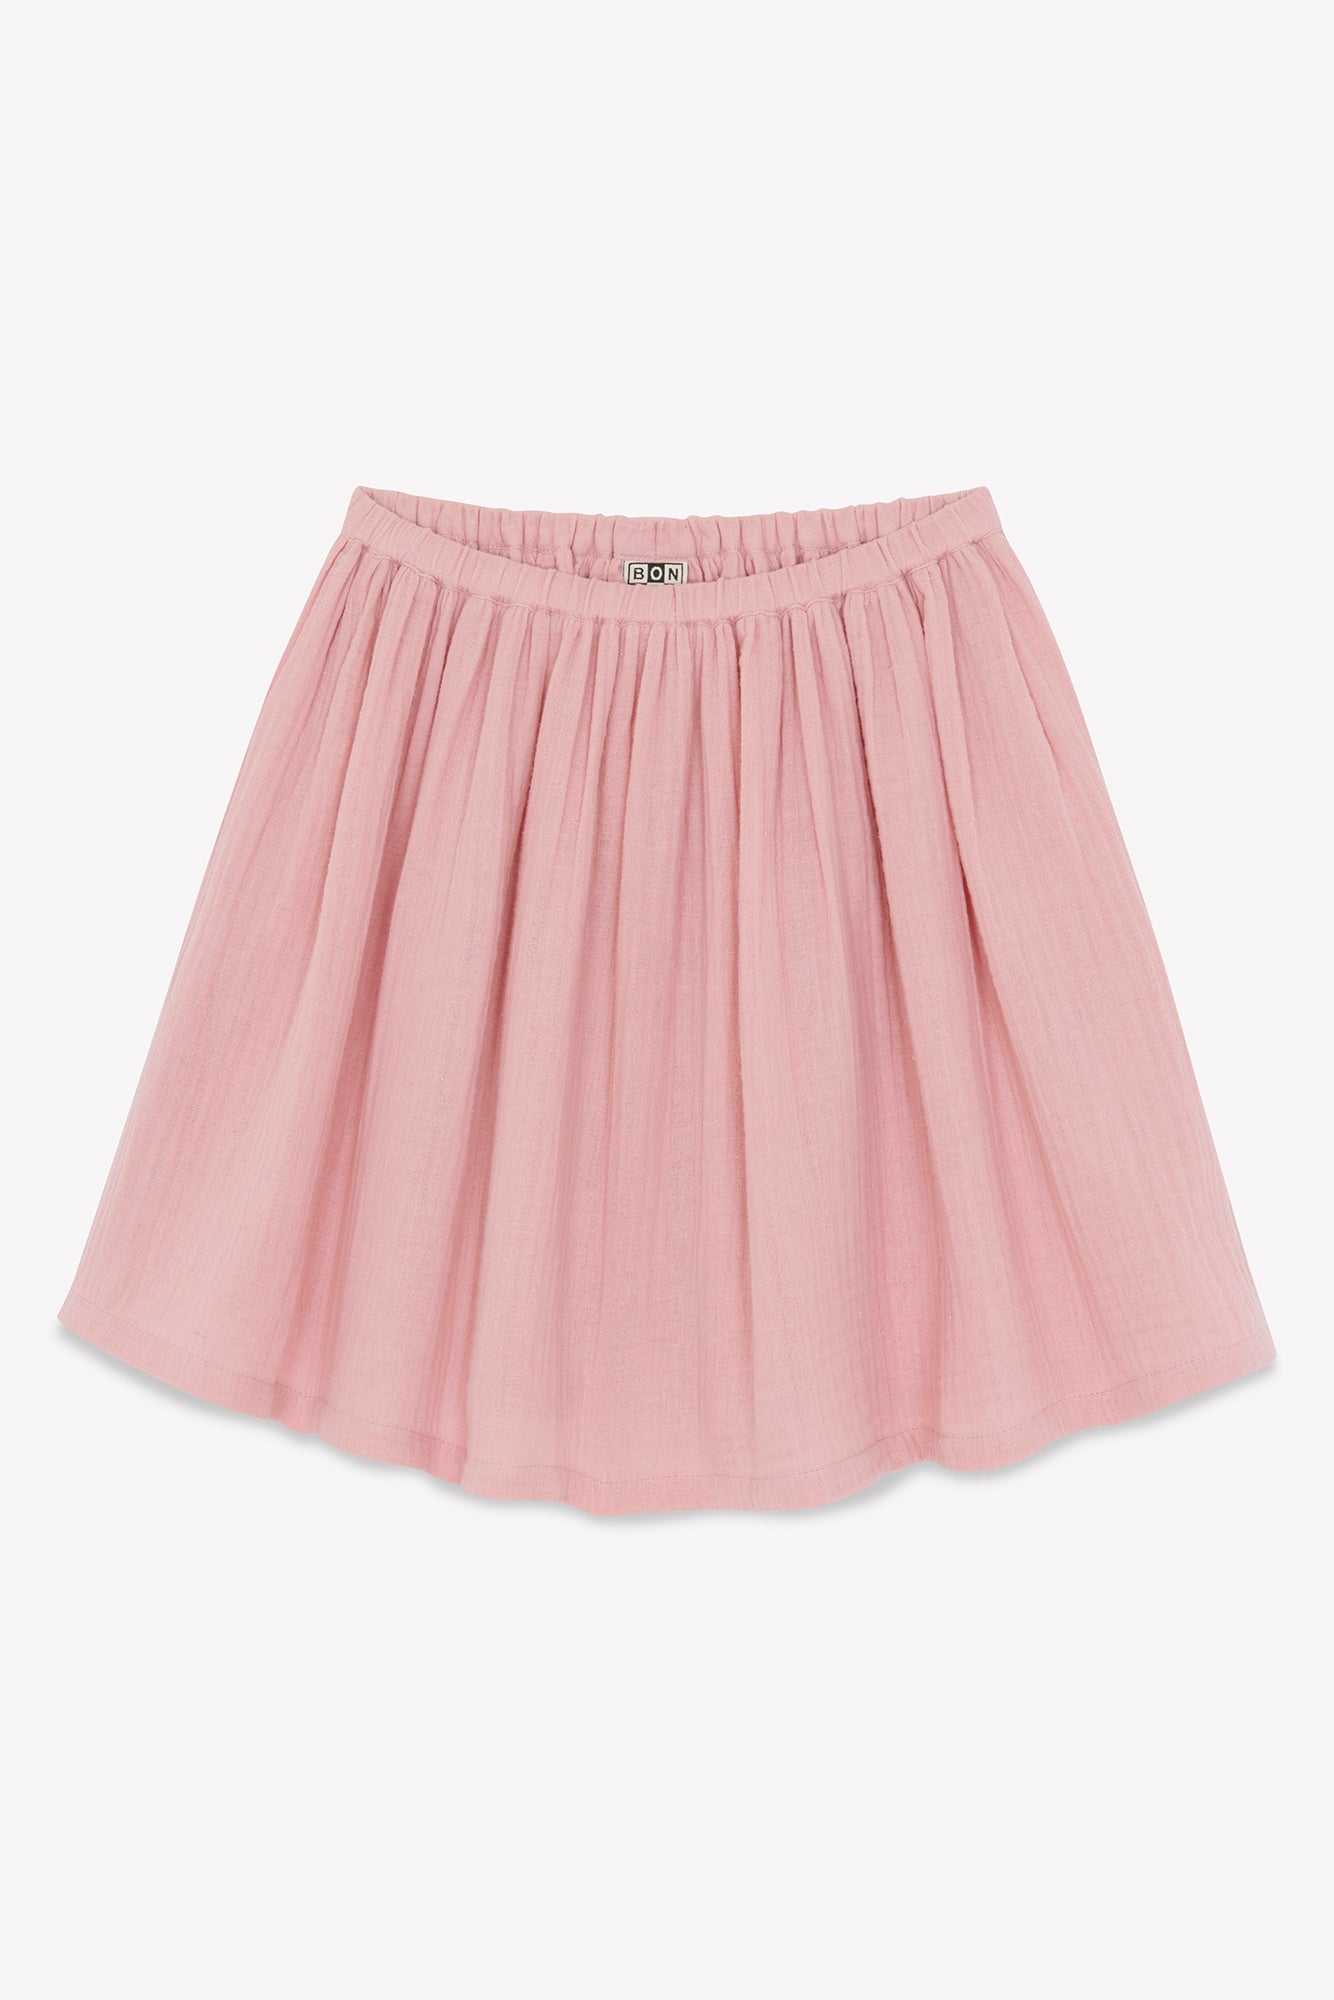 Skirt - Raspberry Pink GOTS certified organic cotton gauze